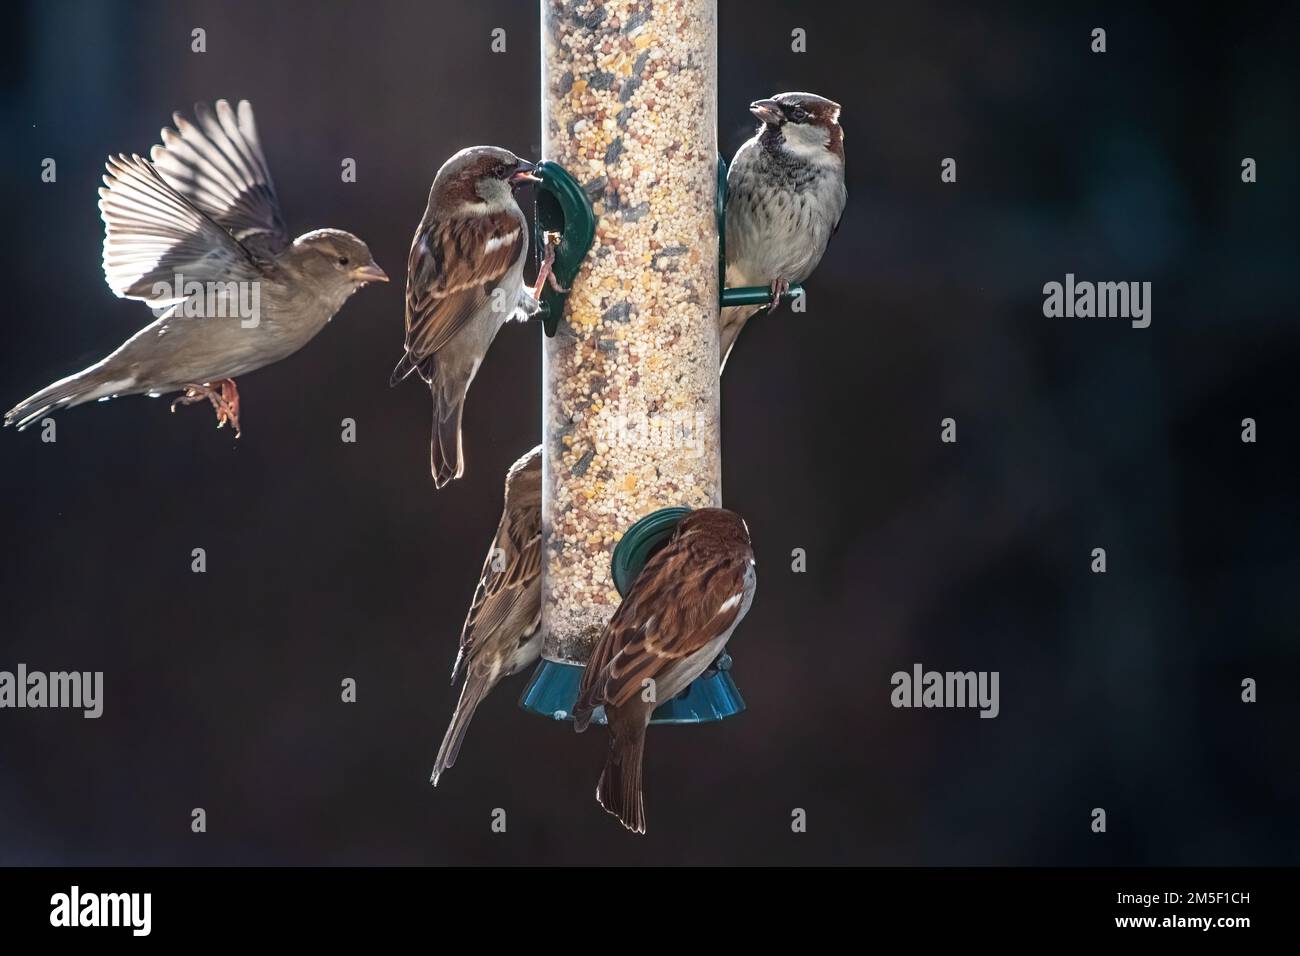 House sparrows interaction at bird feeder Stock Photo